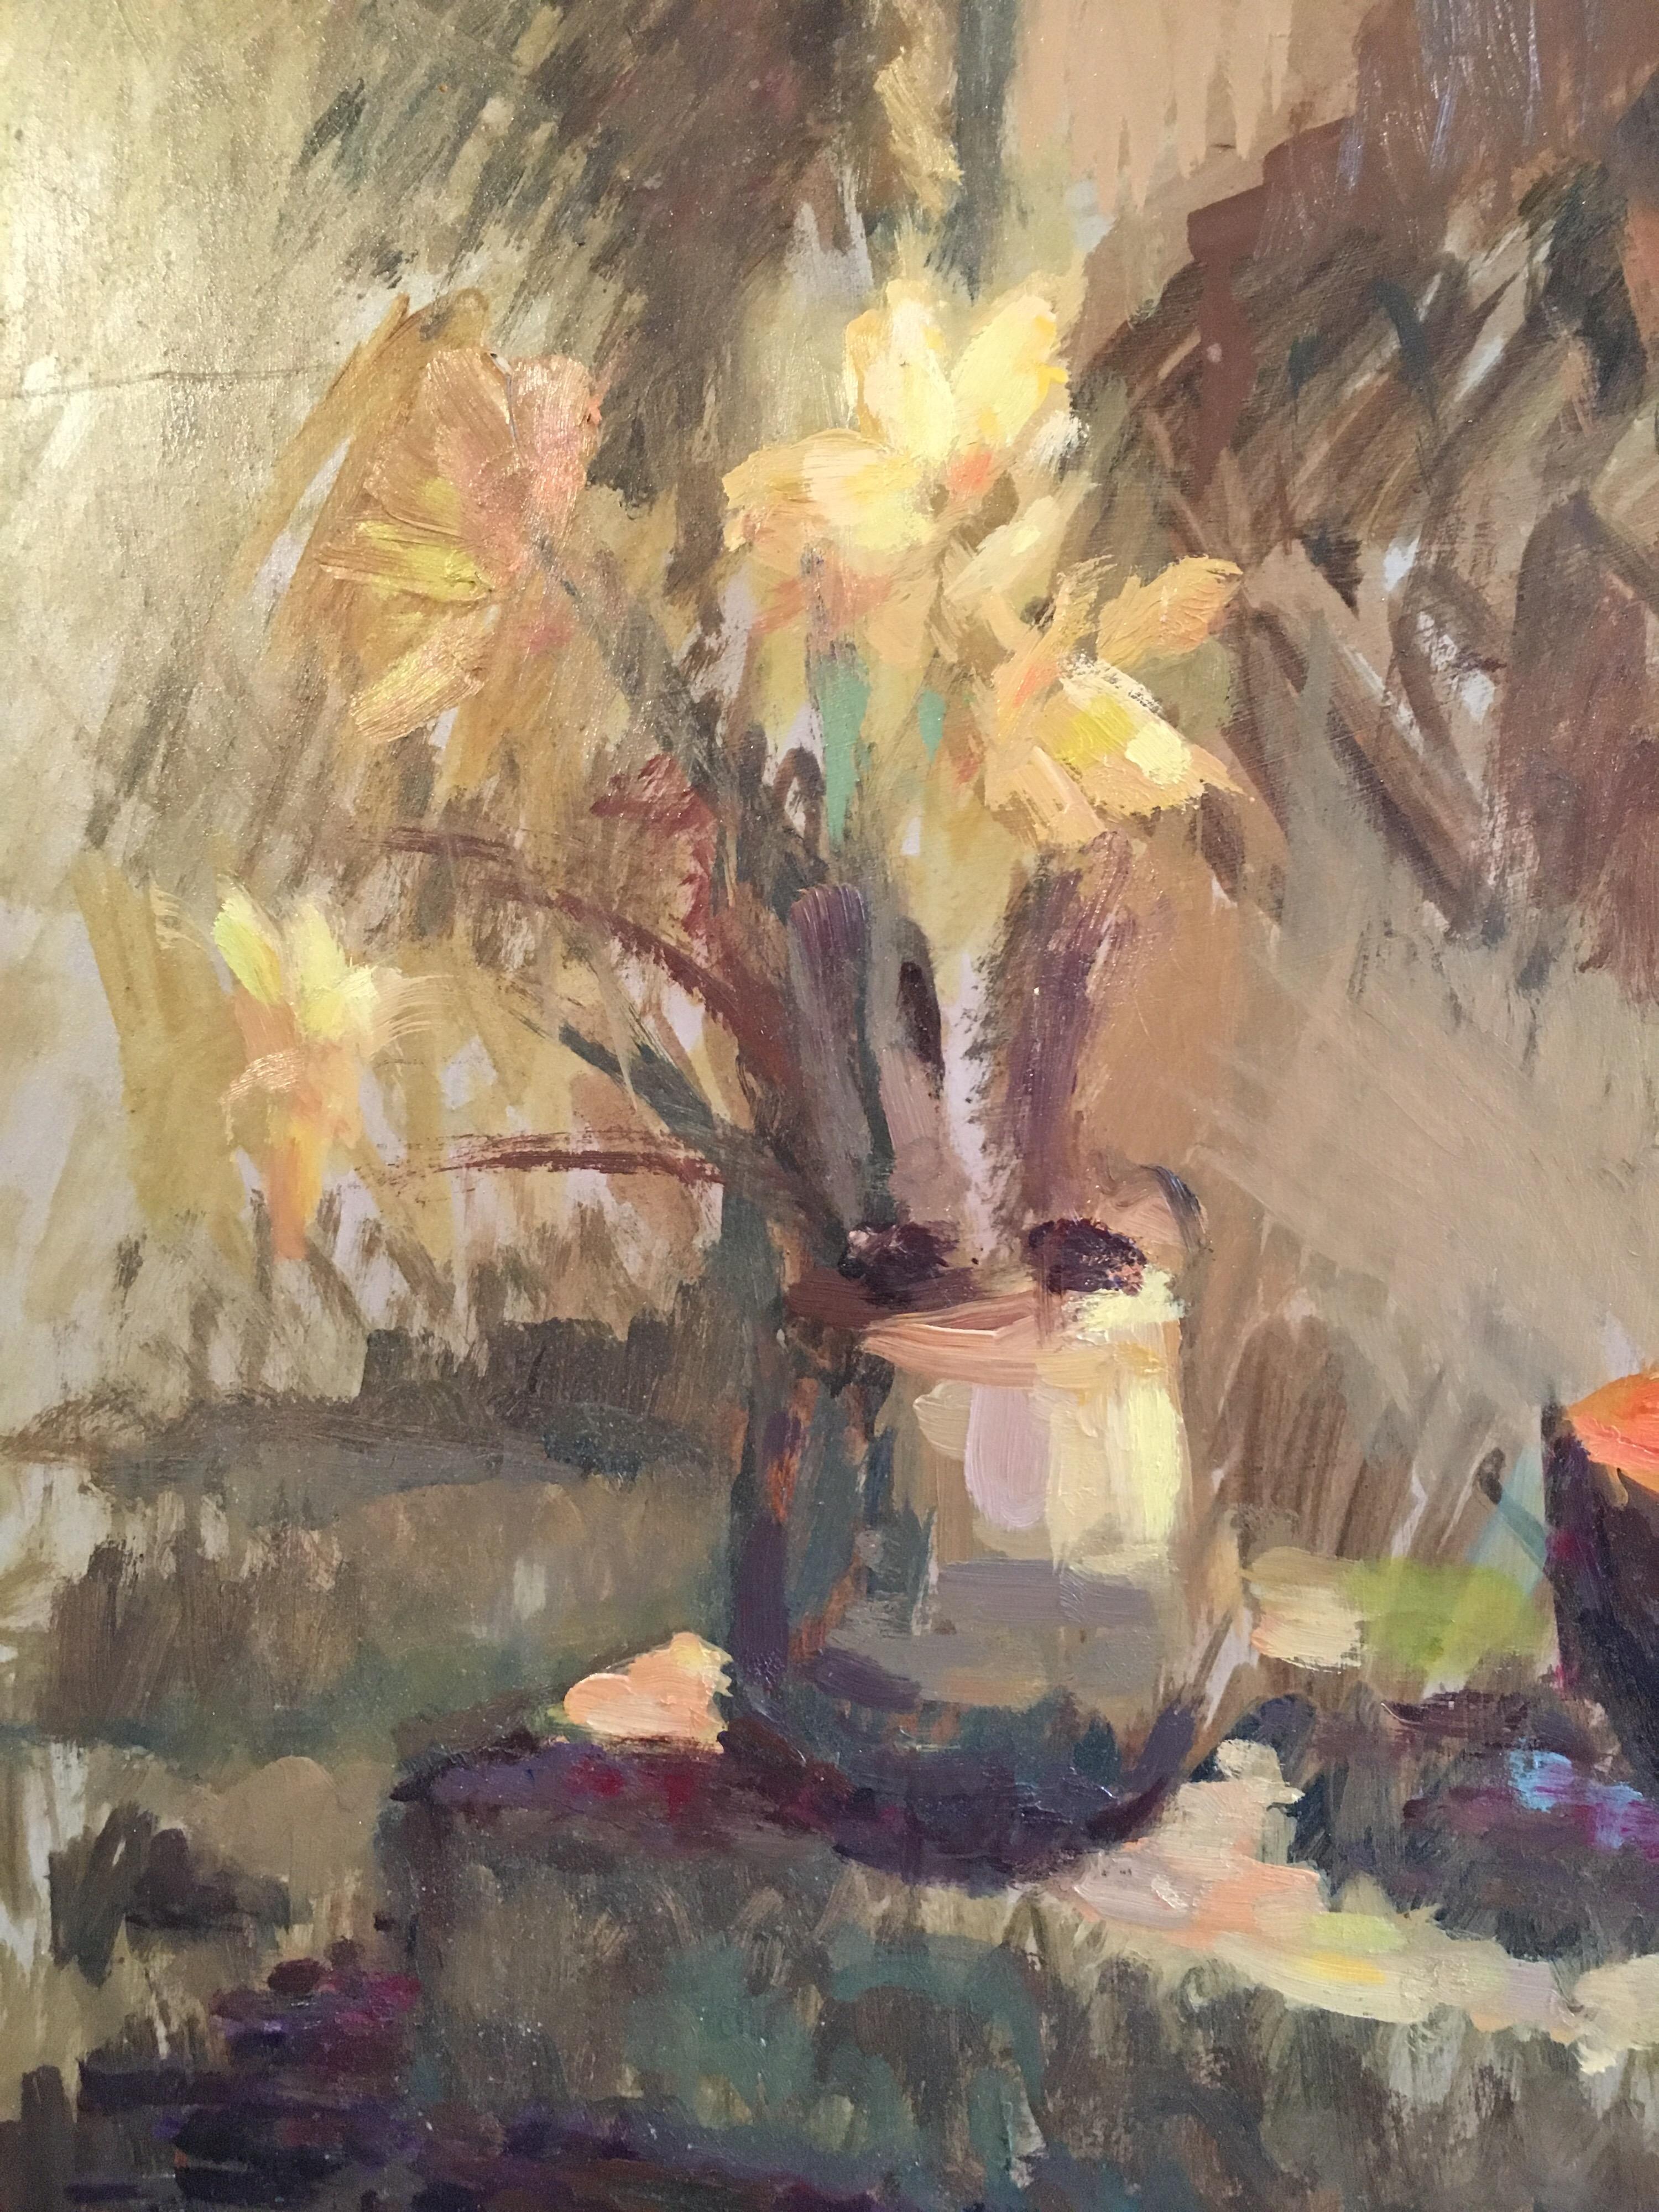 Nature morte abstraite, couleurs sourdes, peinture à l'huile originale
Par l'artiste britannique Beryl Darton, milieu du 20e siècle
Signé par l'artiste dans le coin inférieur gauche
Peinture à l'huile sur carton, non encadrée
Taille du tableau : 18